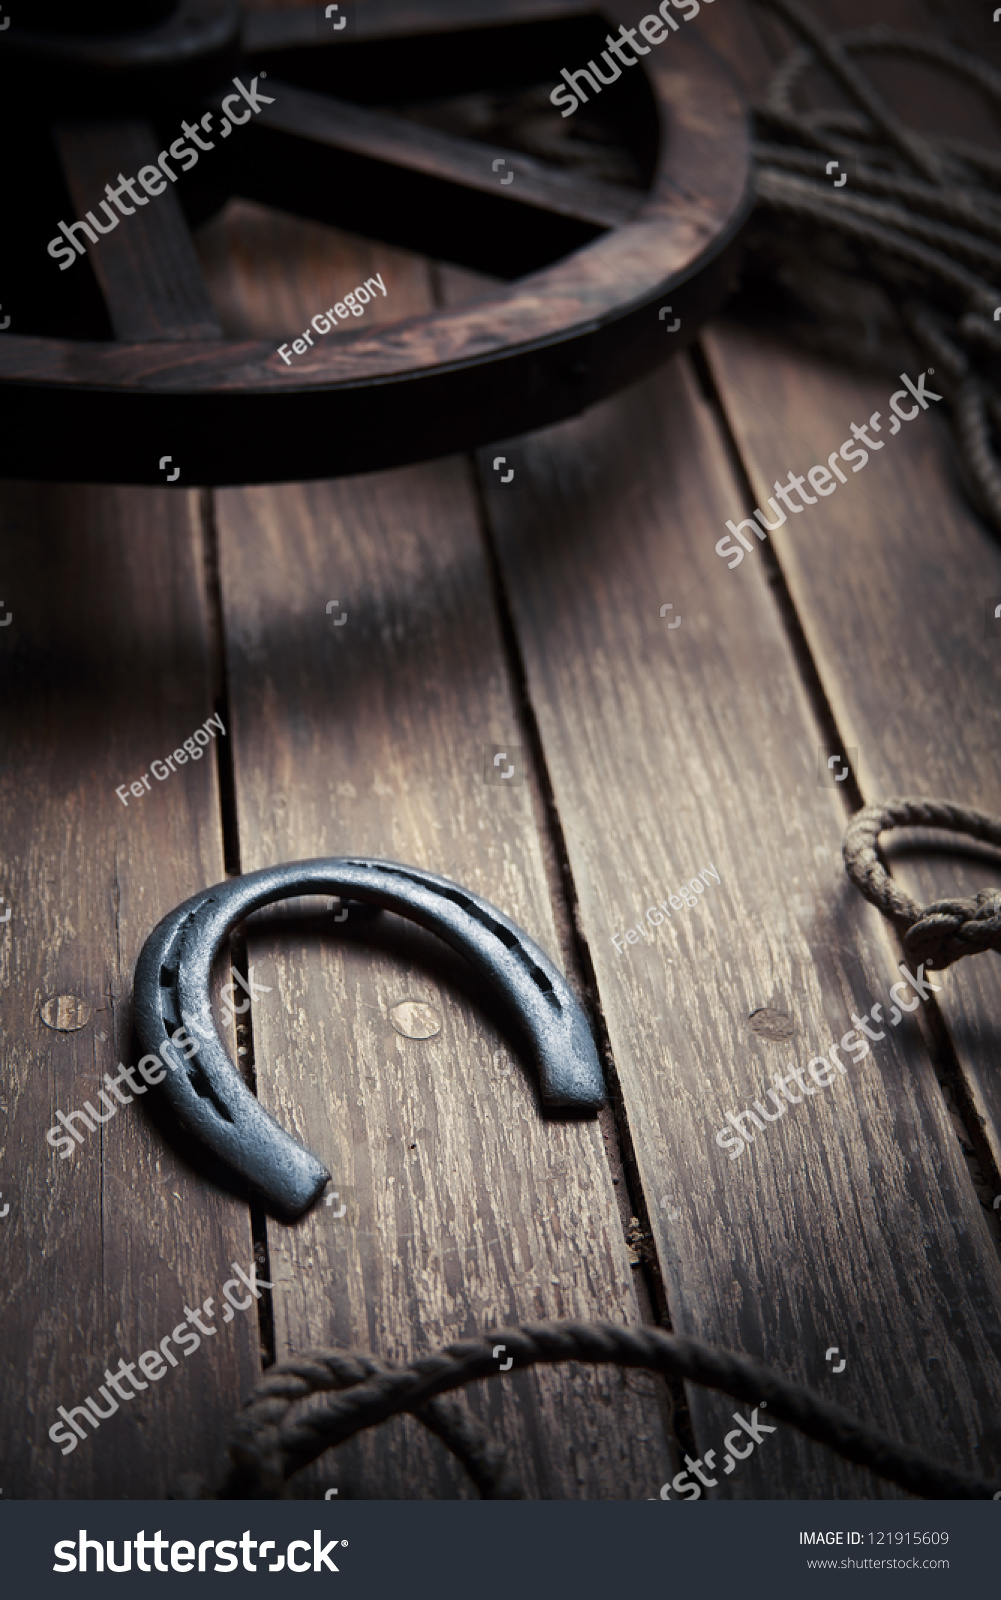 Lucky Horseshoe On Wood Floor Stock Photo 121915609 - Shutterstock